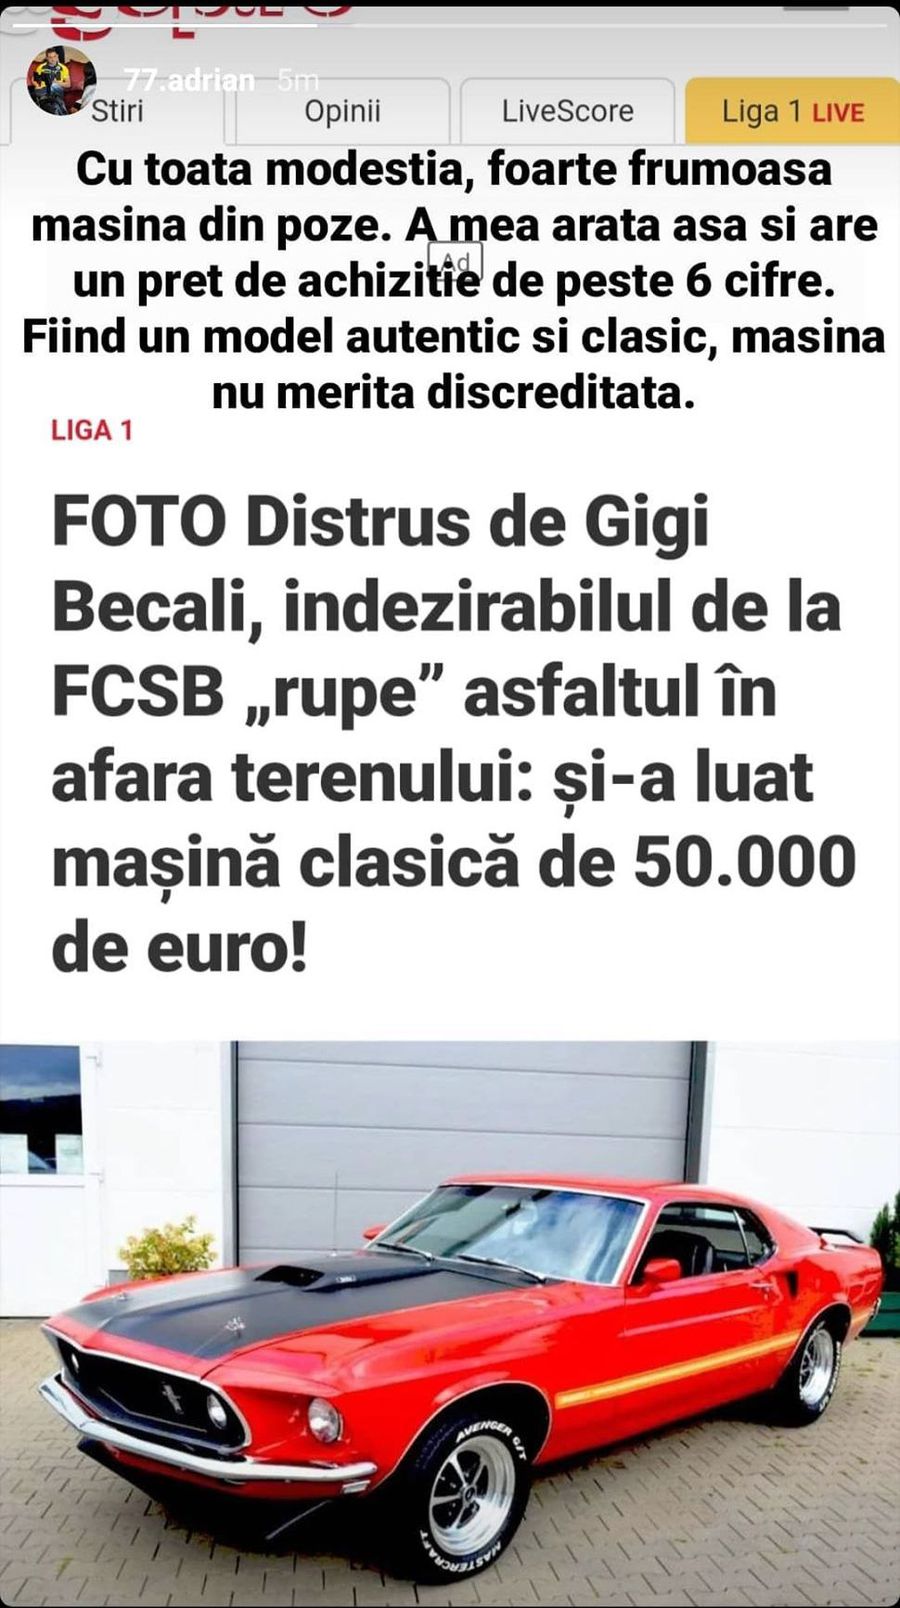 FCSB. Adi Popa a reacționat după articolul publicat în GSP: „Mașina mea are un preț de peste 6 cifre, nu cât ați scris voi” ;)